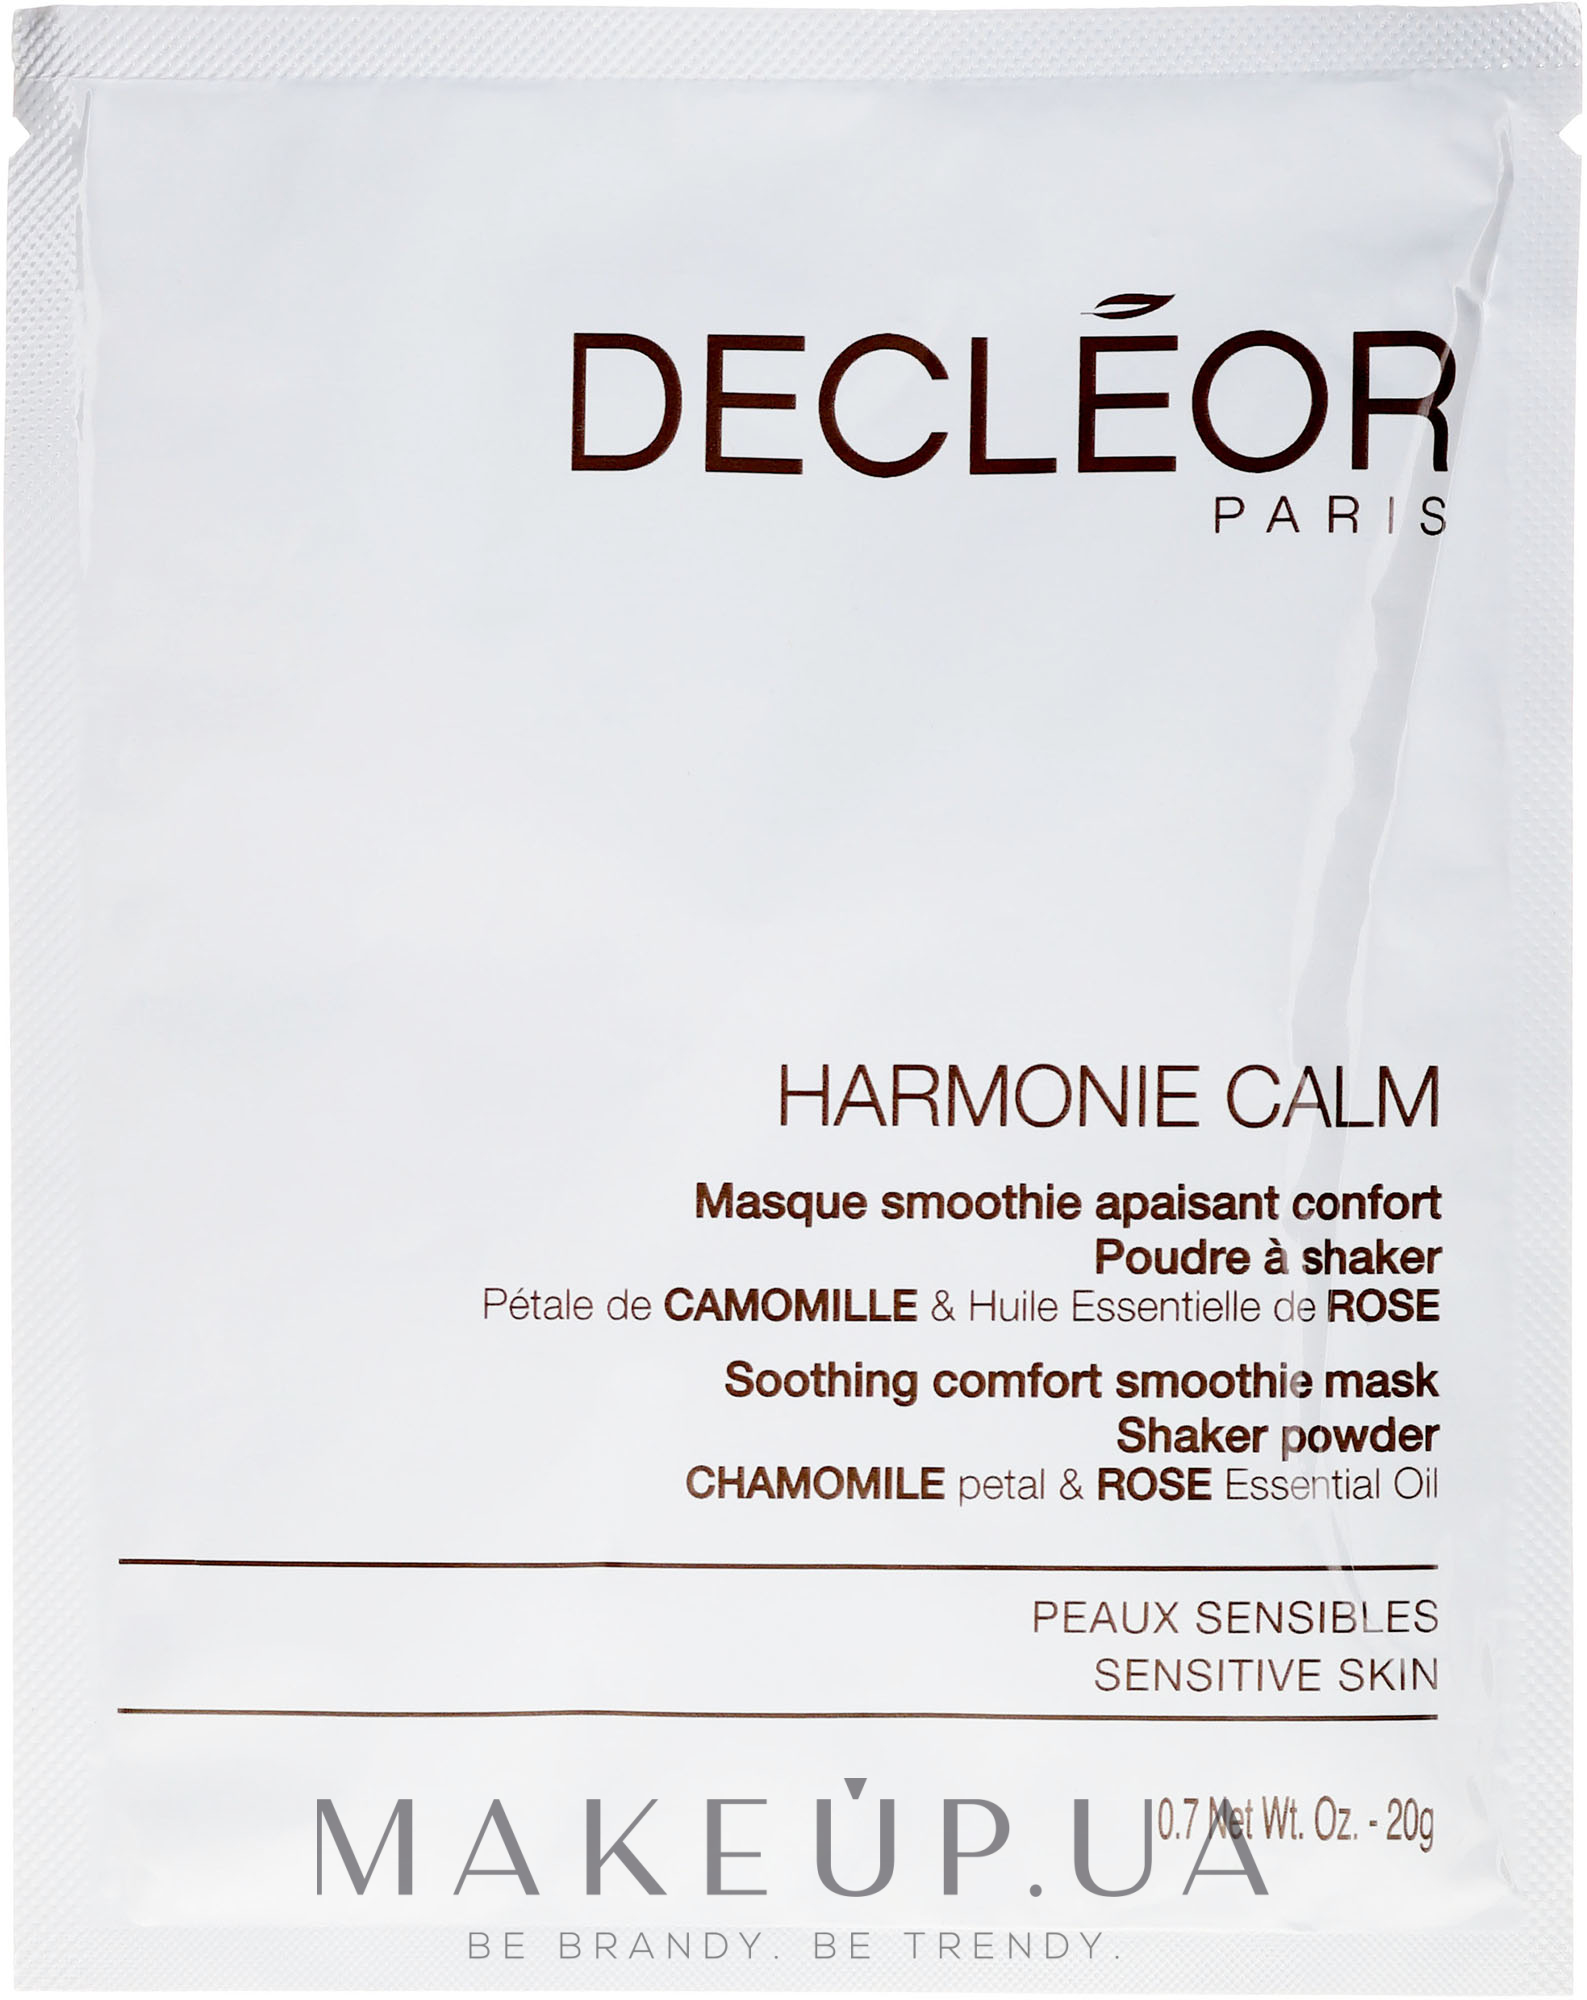 Успокаивающая маска для чувствительной кожи лица - Decleor Harmonie Calm Soothing Comfort Smoothie Mask Shaker Powder — фото 5x20g